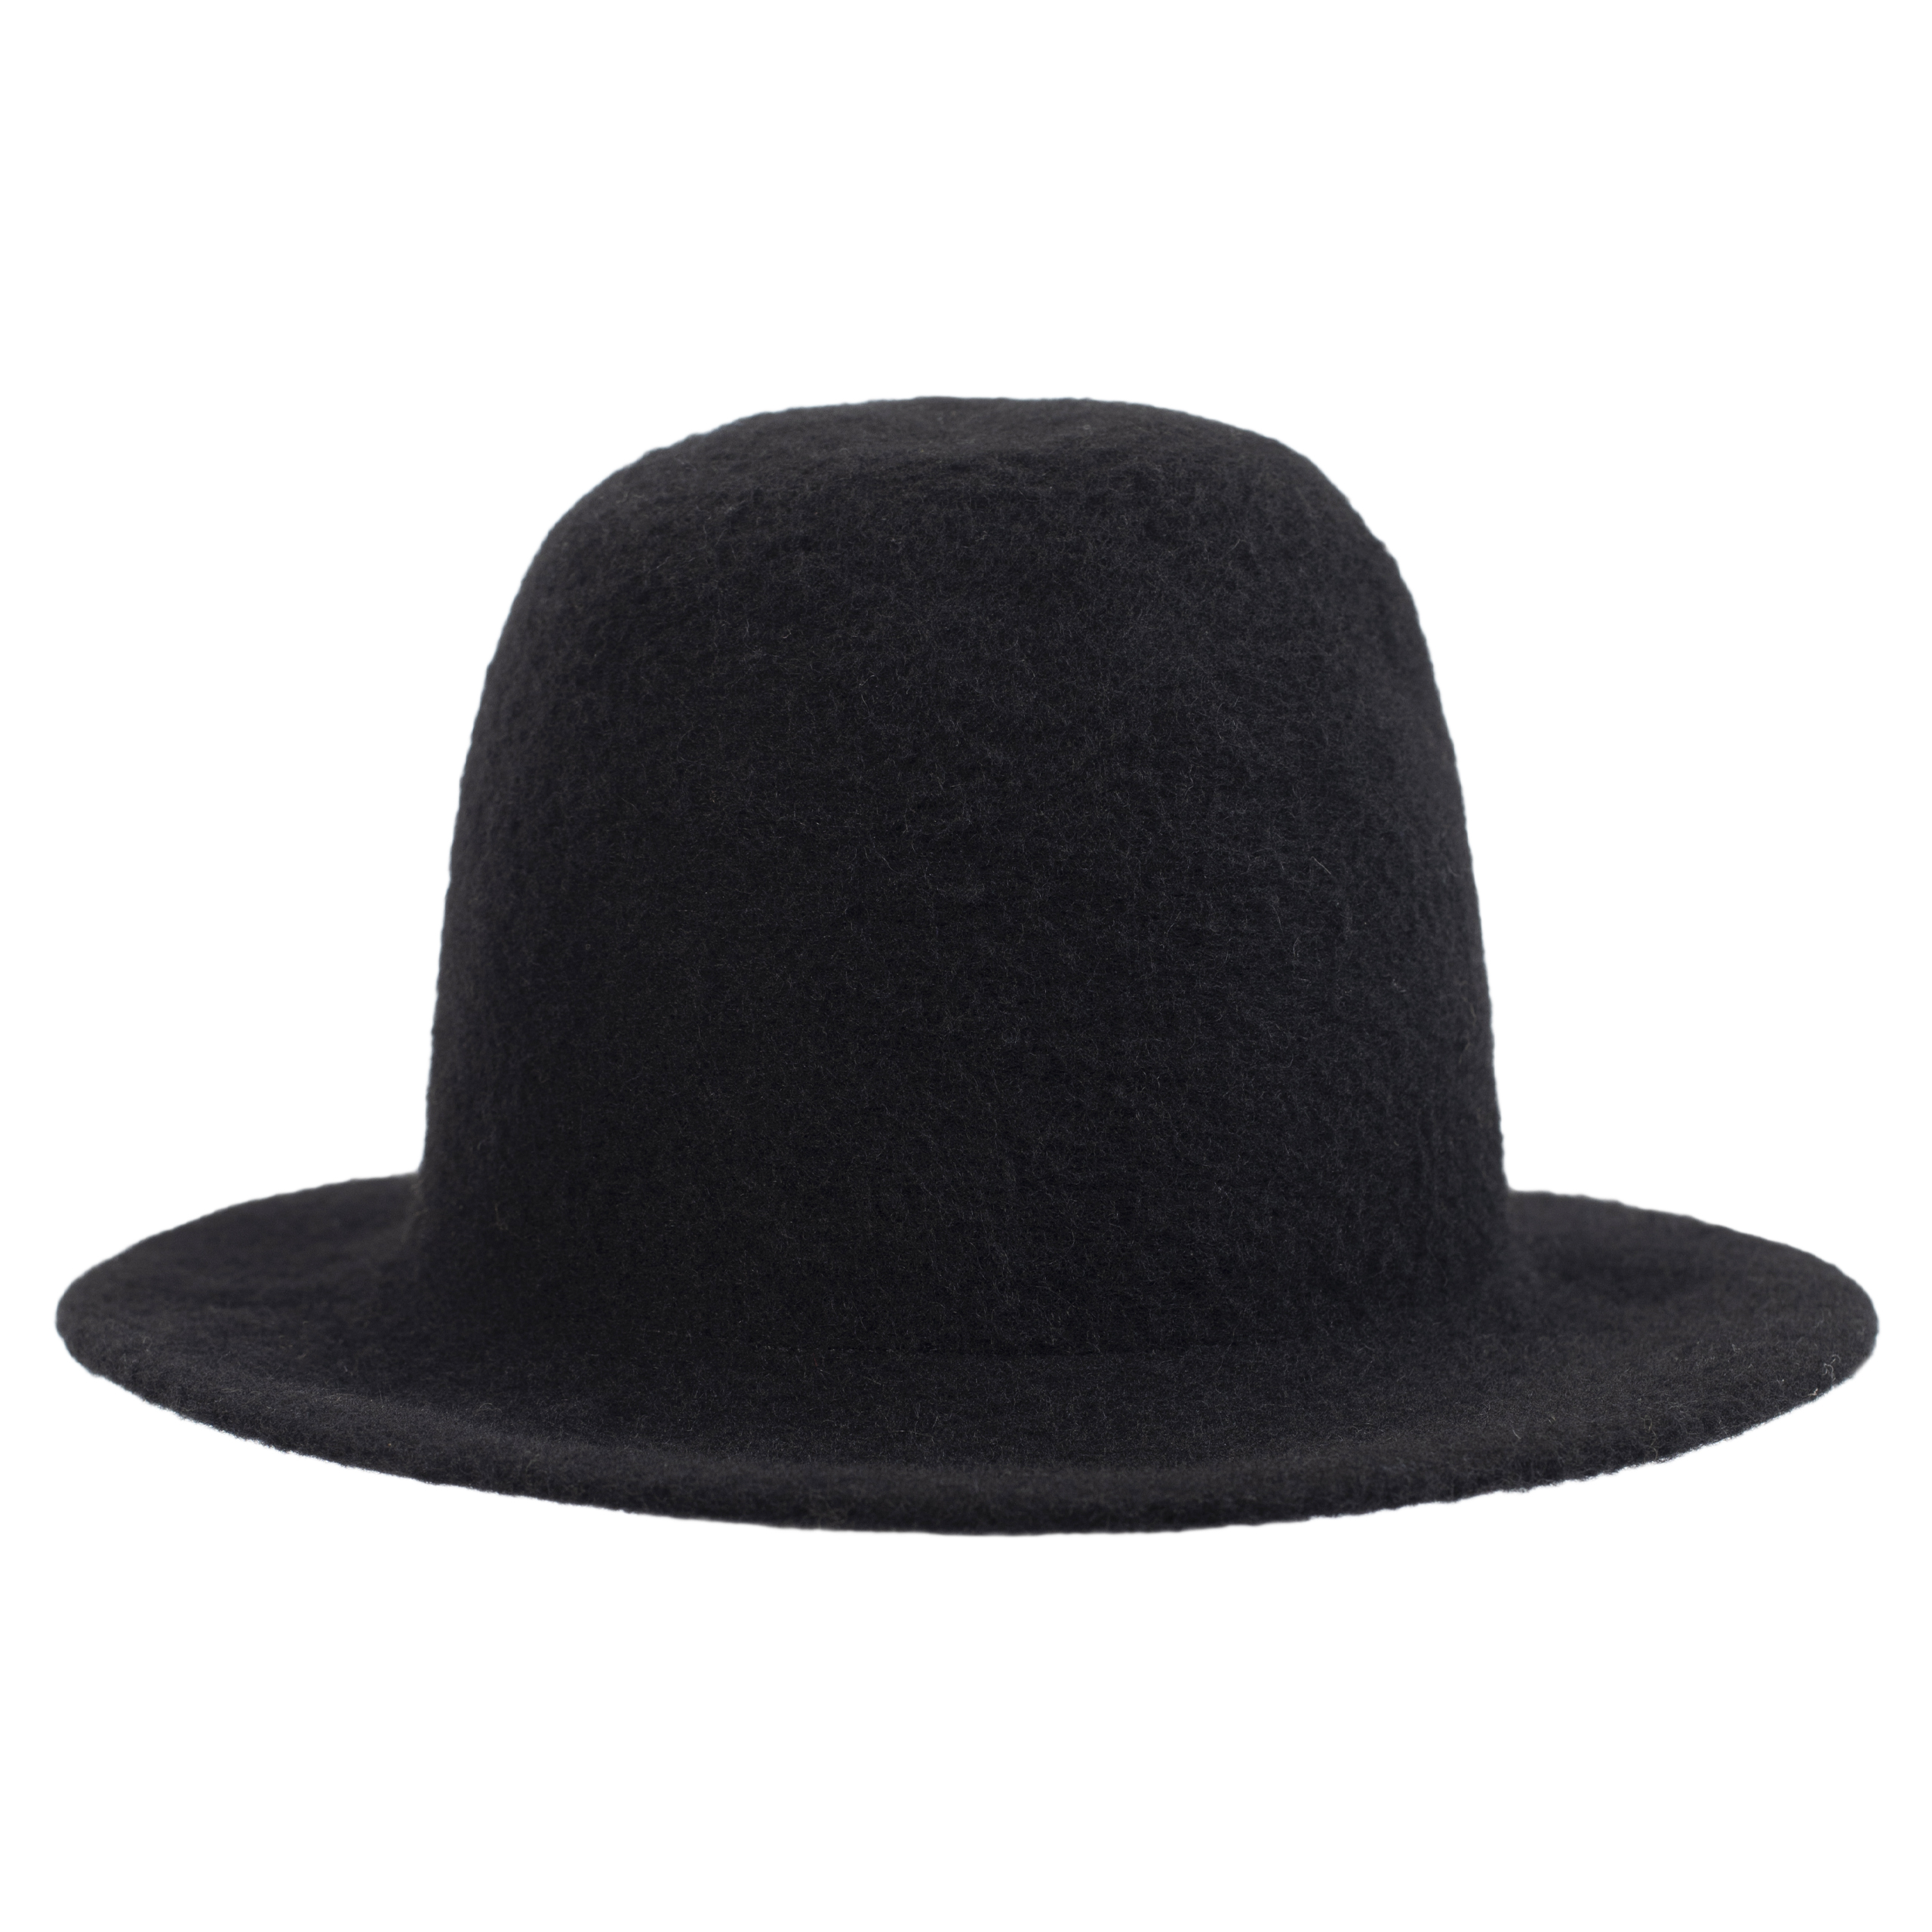 Шерстяная шляпа с вышитым логотипом Junya Watanabe WH-K606-051-1, размер 3 - фото 2